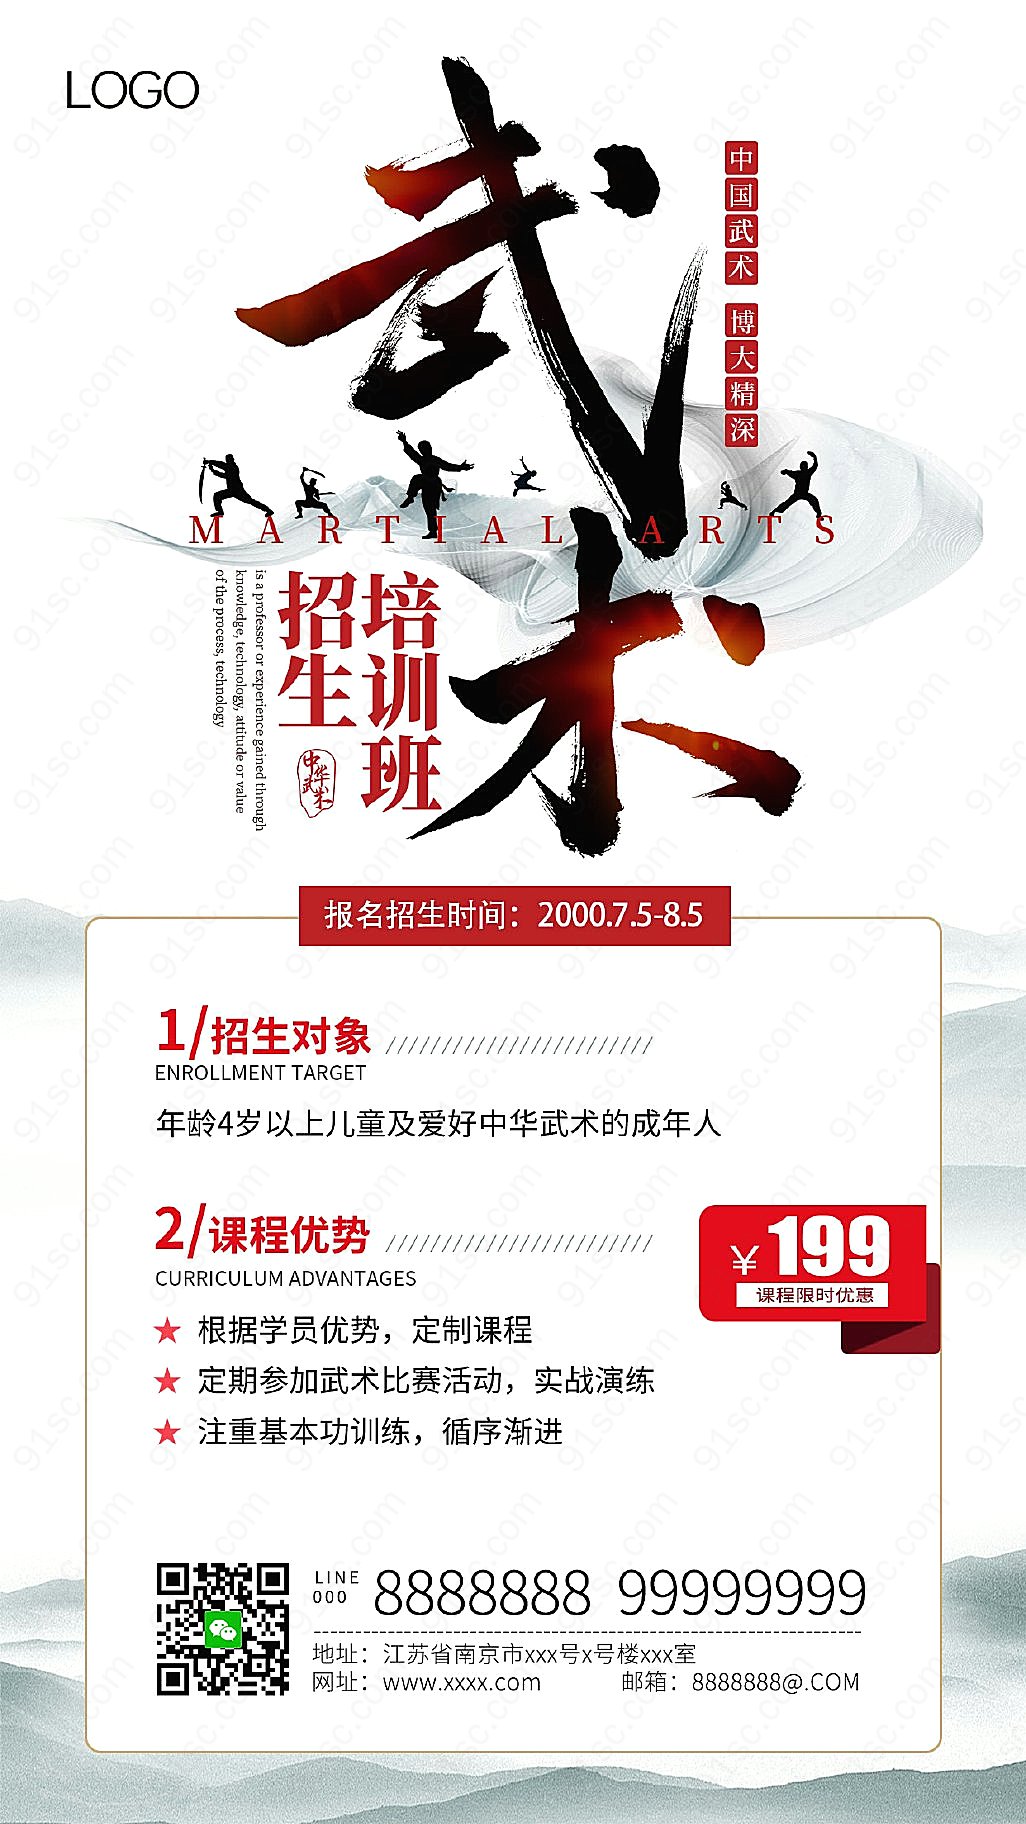 水墨风格中国风格武术培训课程ui宣传海报新媒体用图下载